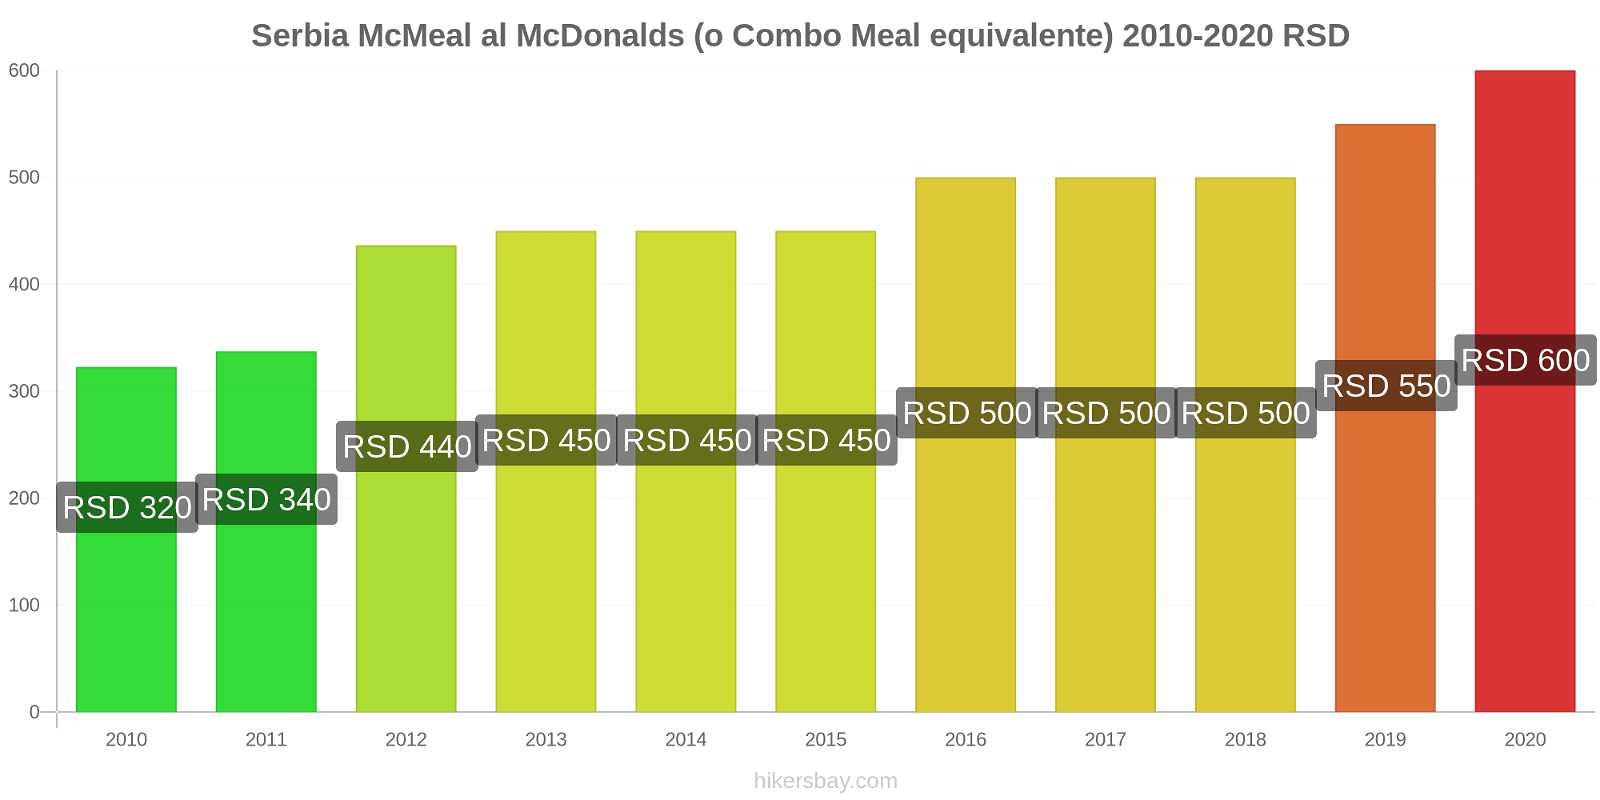 Serbia variazioni di prezzo McMeal al McDonalds (o in un equivalente fastfood) hikersbay.com